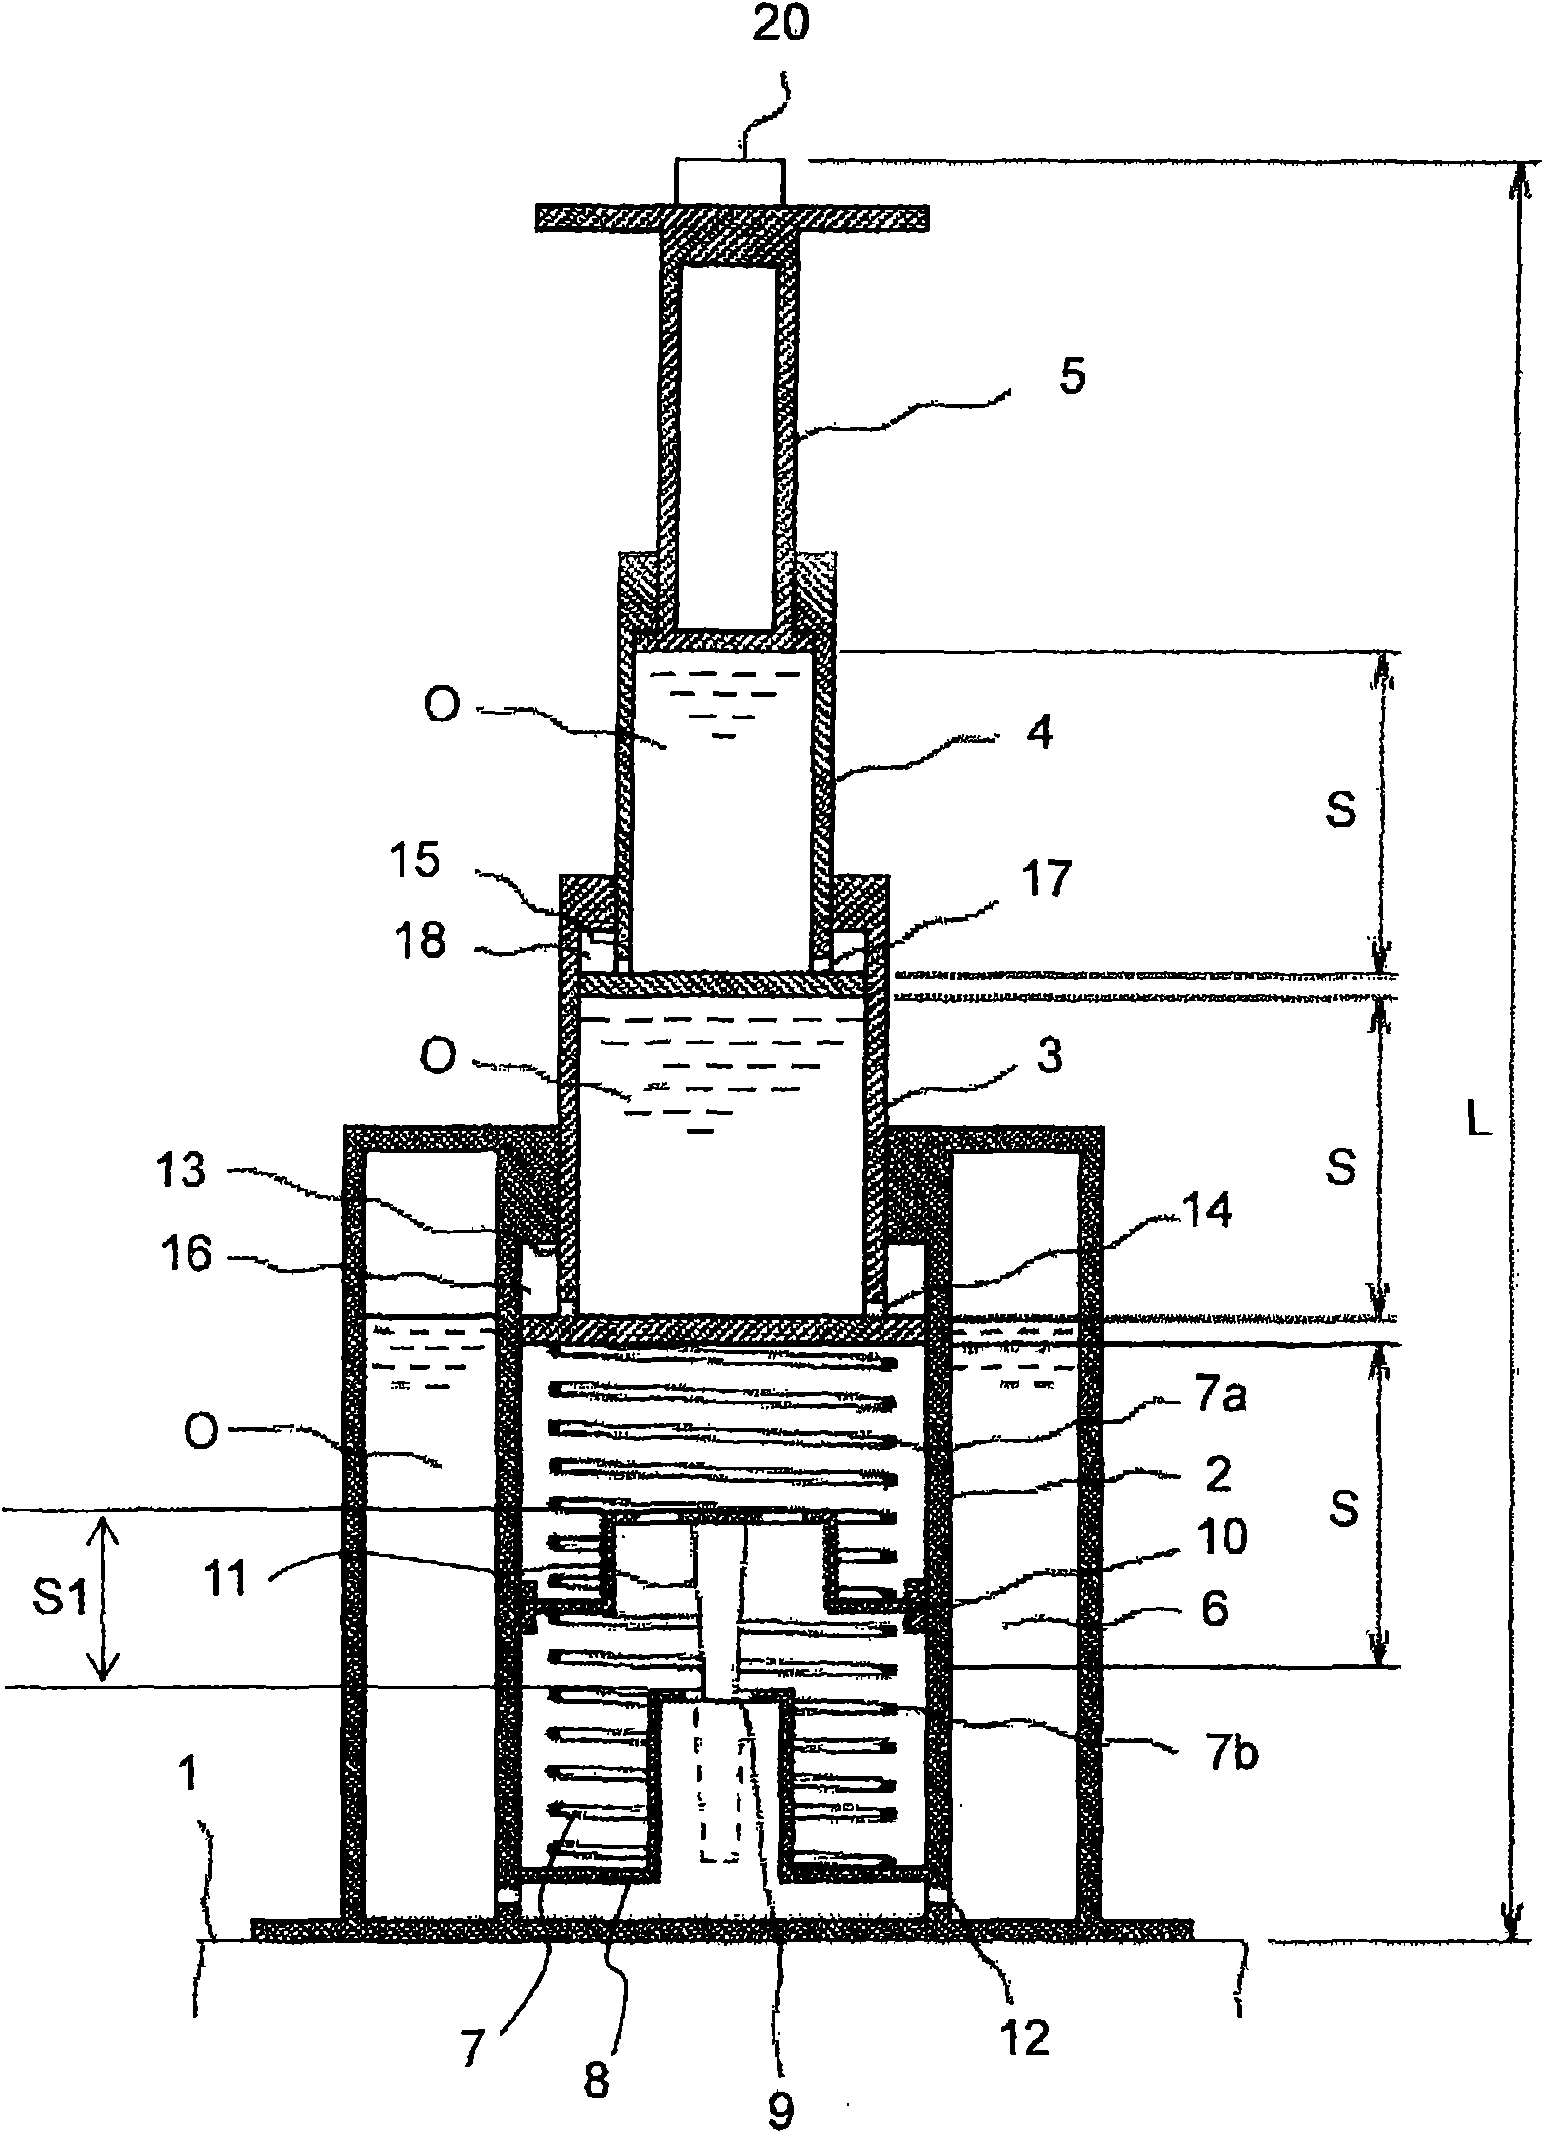 Hydraulic damper for elevator